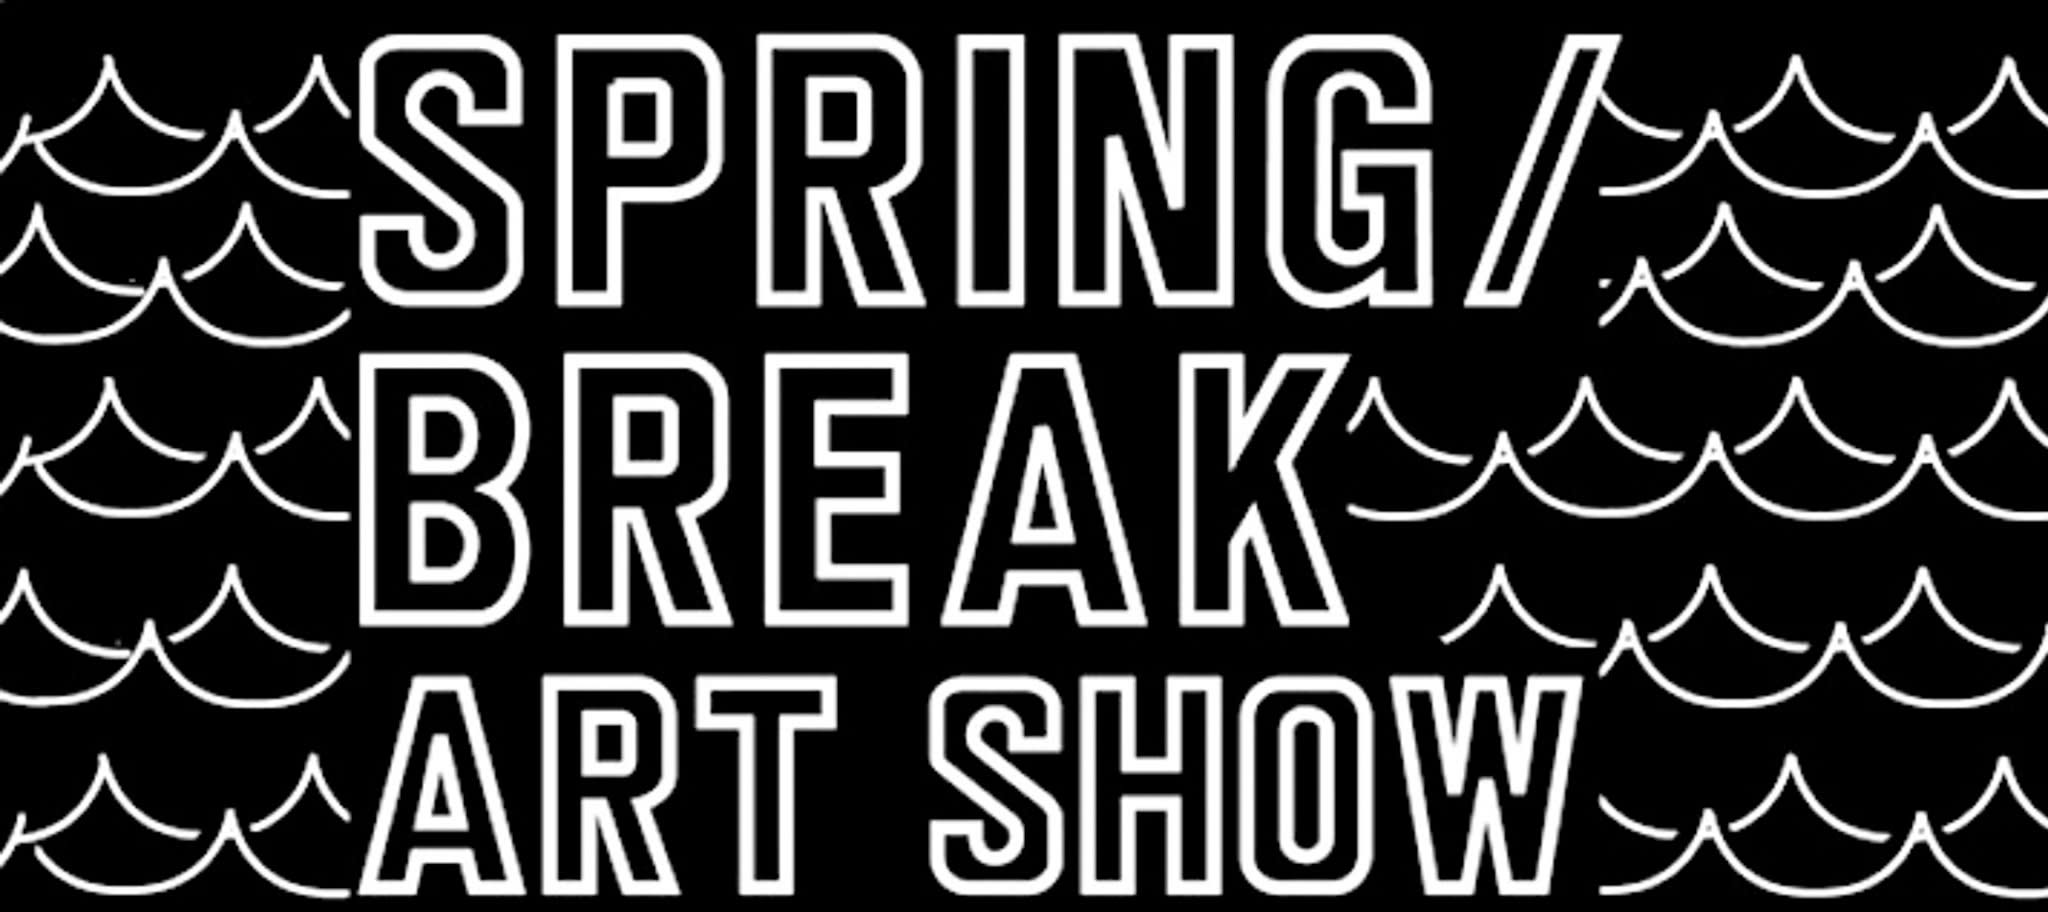 Spring Break Art Show Logo